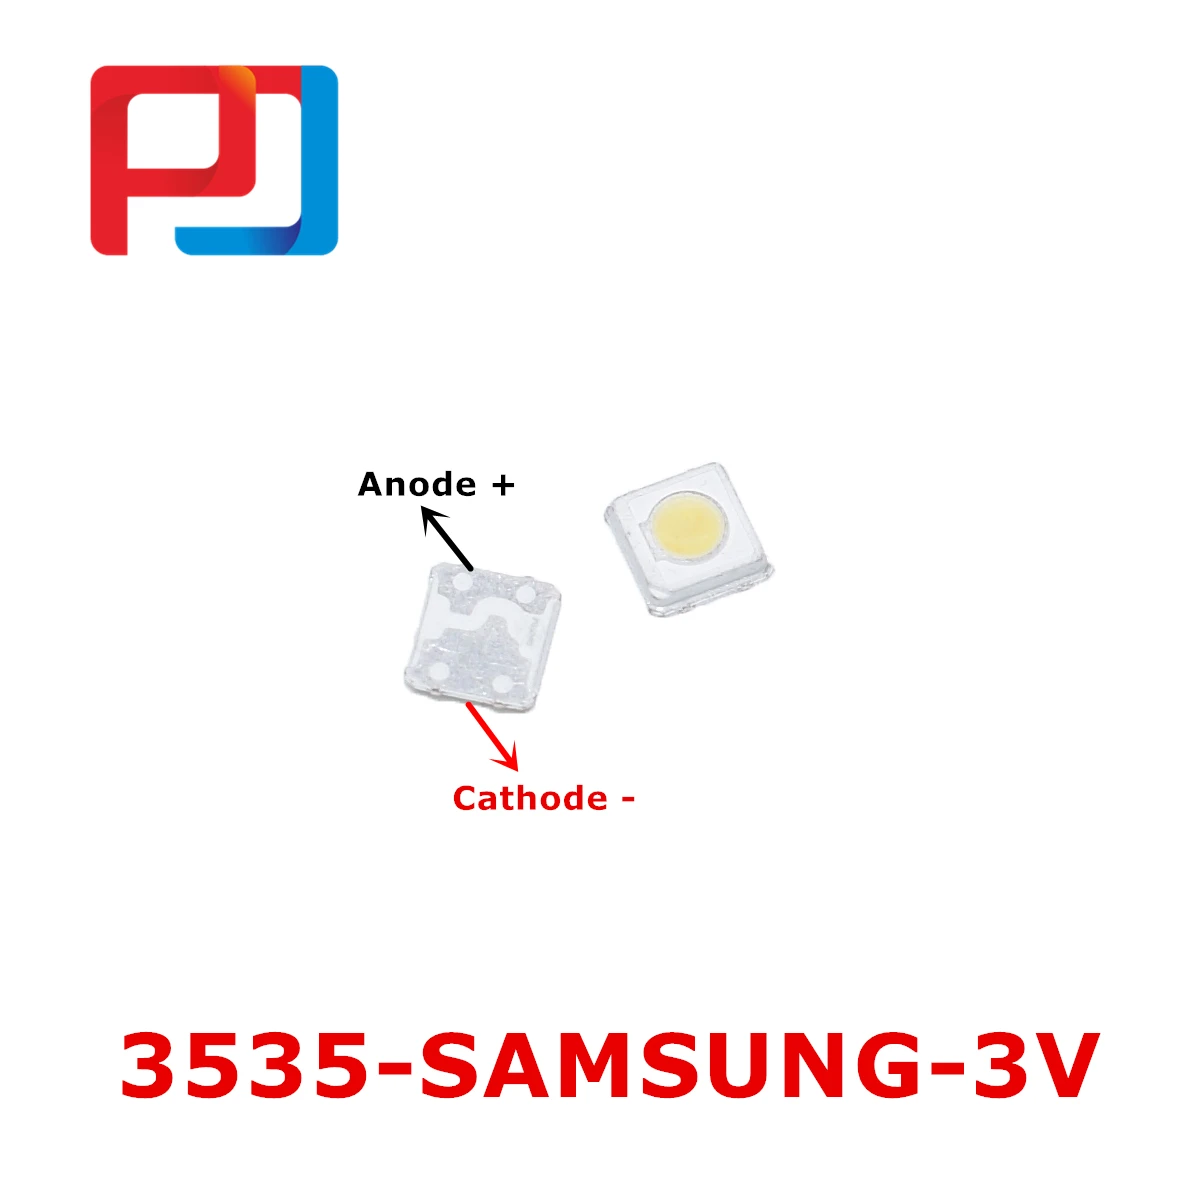 SAMSUNG светодиодный 200 шт подсветка высокой мощности светодиодный 1 Вт 3537 3535 100лм холодный белый SPBWH1332S1BVC1BIB lcd подсветка для ТВ приложения